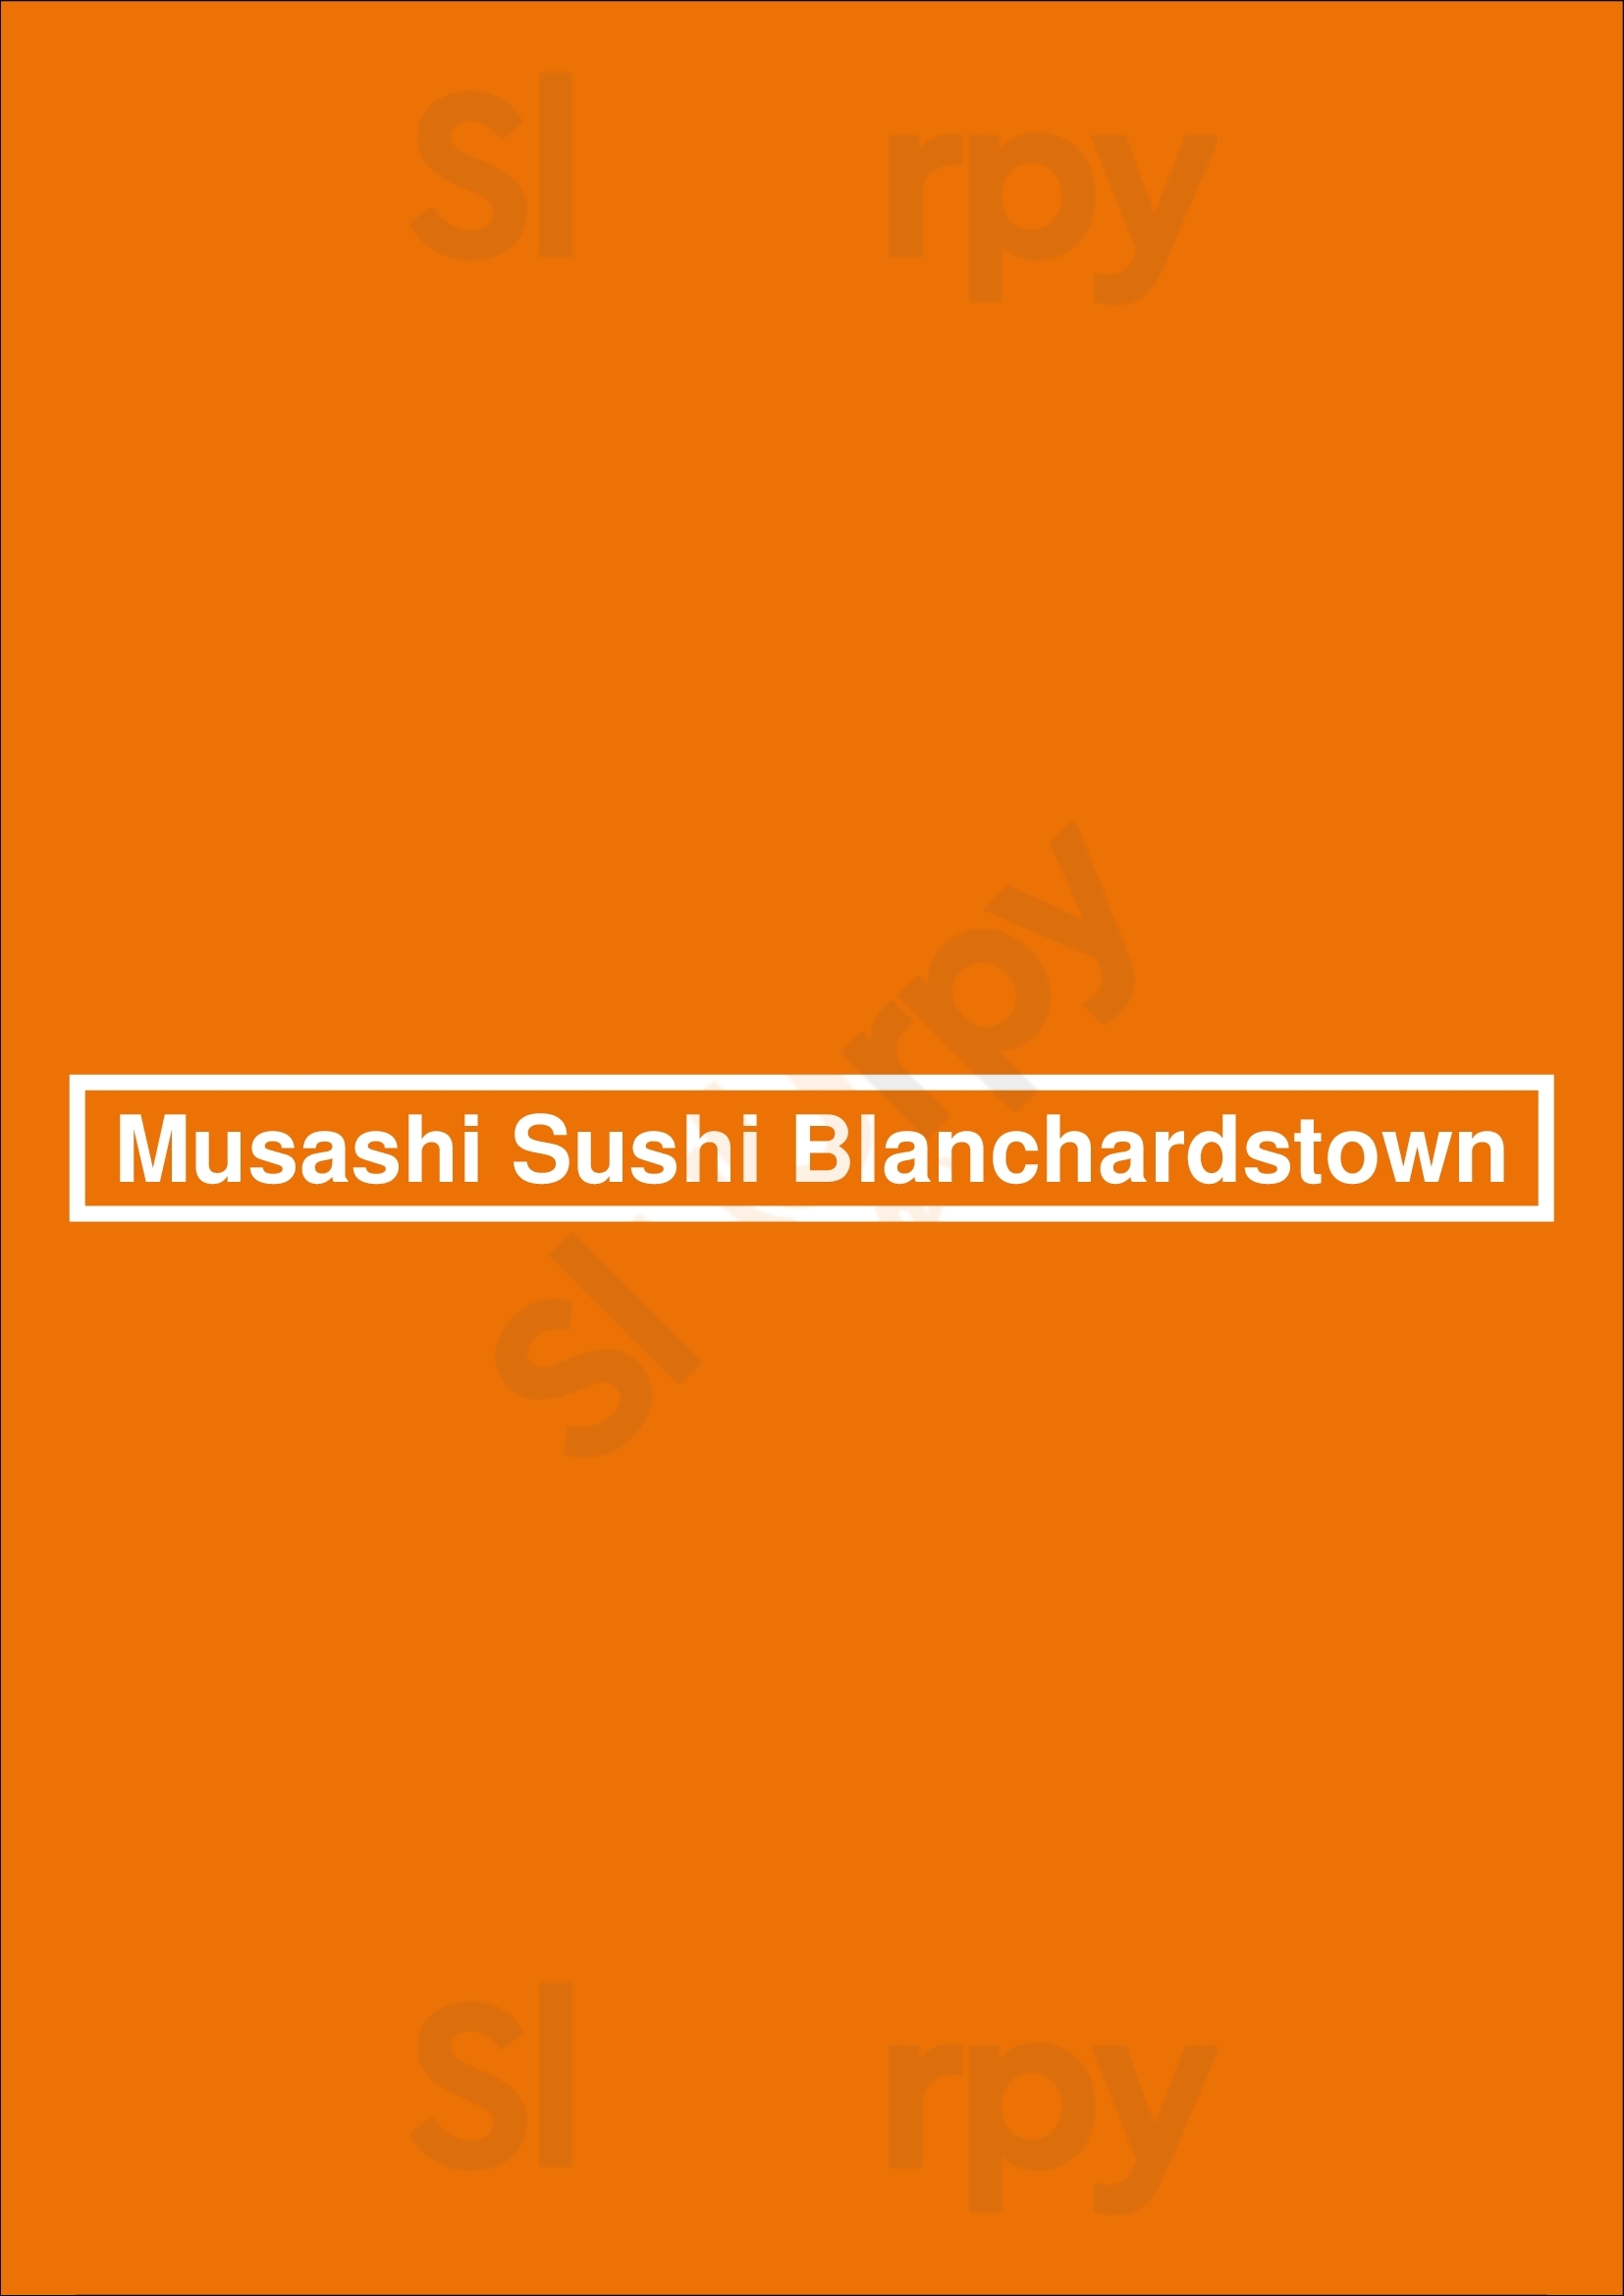 Musashi Sushi Blanchardstown Blanchardstown Menu - 1